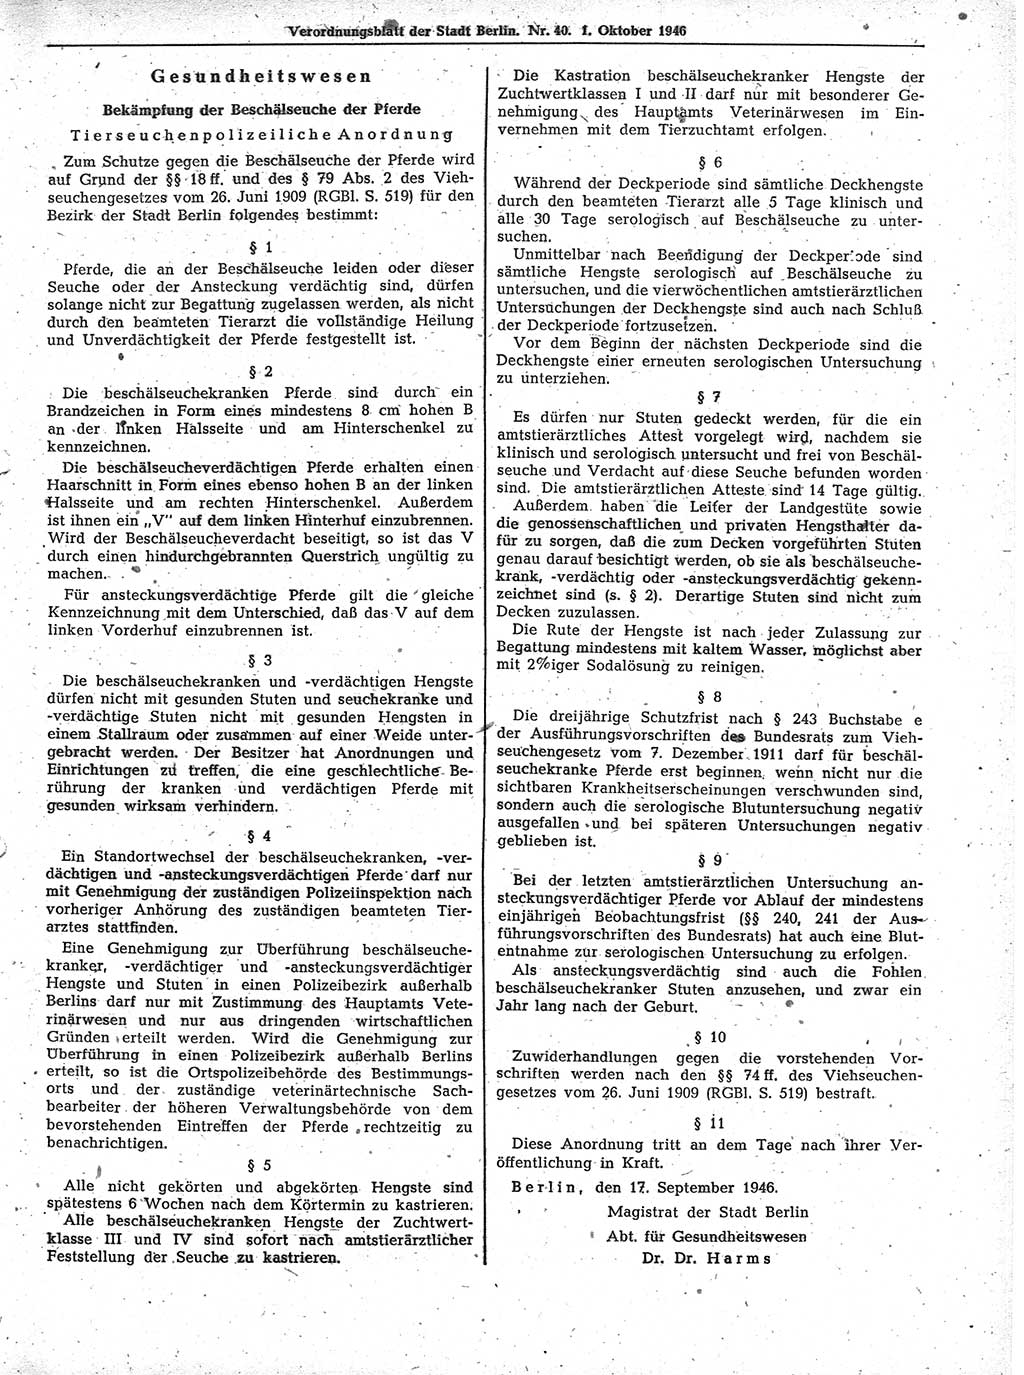 Verordnungsblatt (VOBl.) der Stadt Berlin, für Groß-Berlin 1946, Seite 359 (VOBl. Bln. 1946, S. 359)